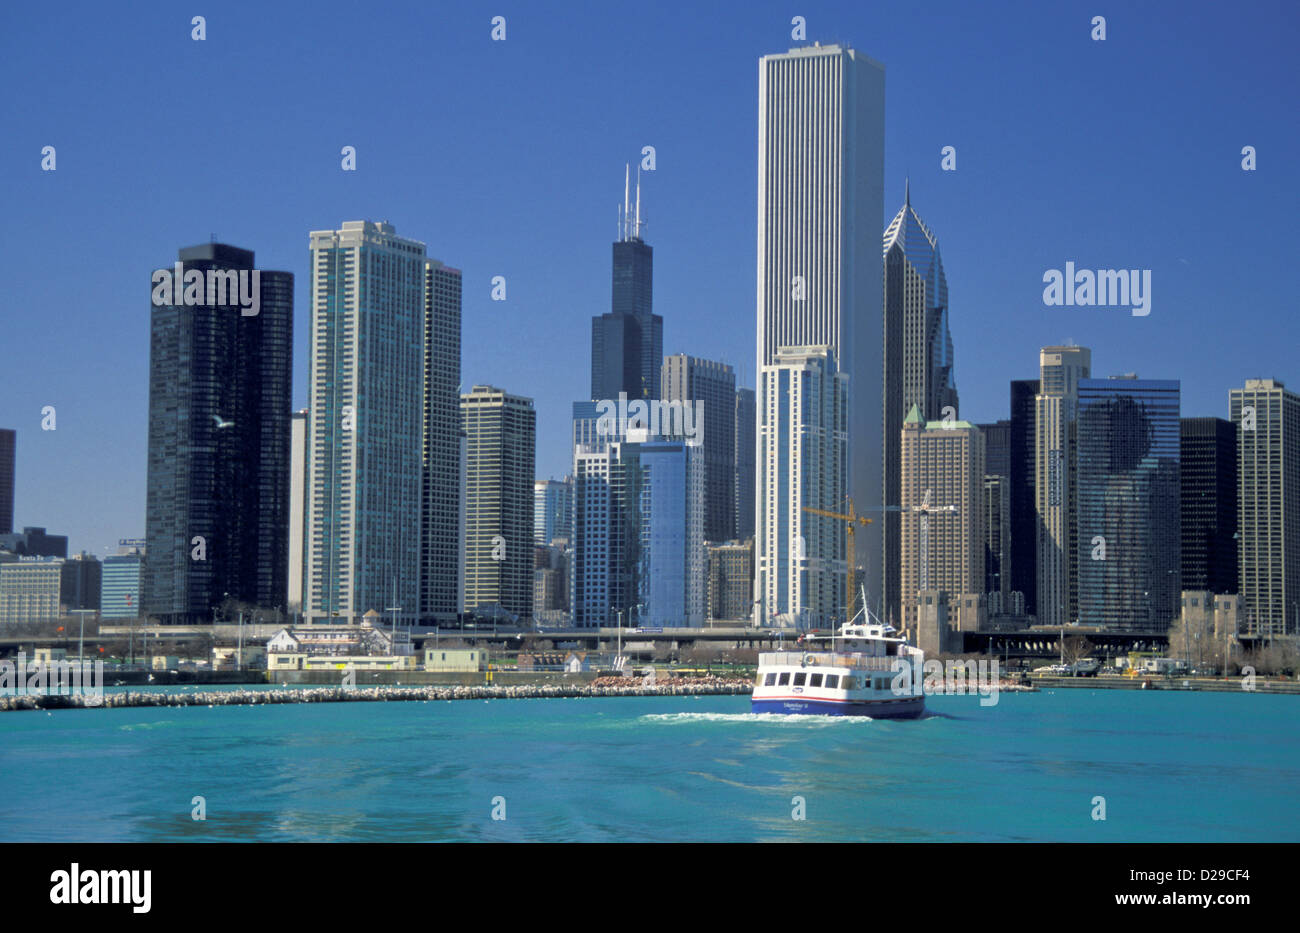 Illinois. Chicago. Skyline mit Harbor Point, Sears Tower, Aon Center, 2 Prudential Plaza und im Hintergrund. Stockfoto